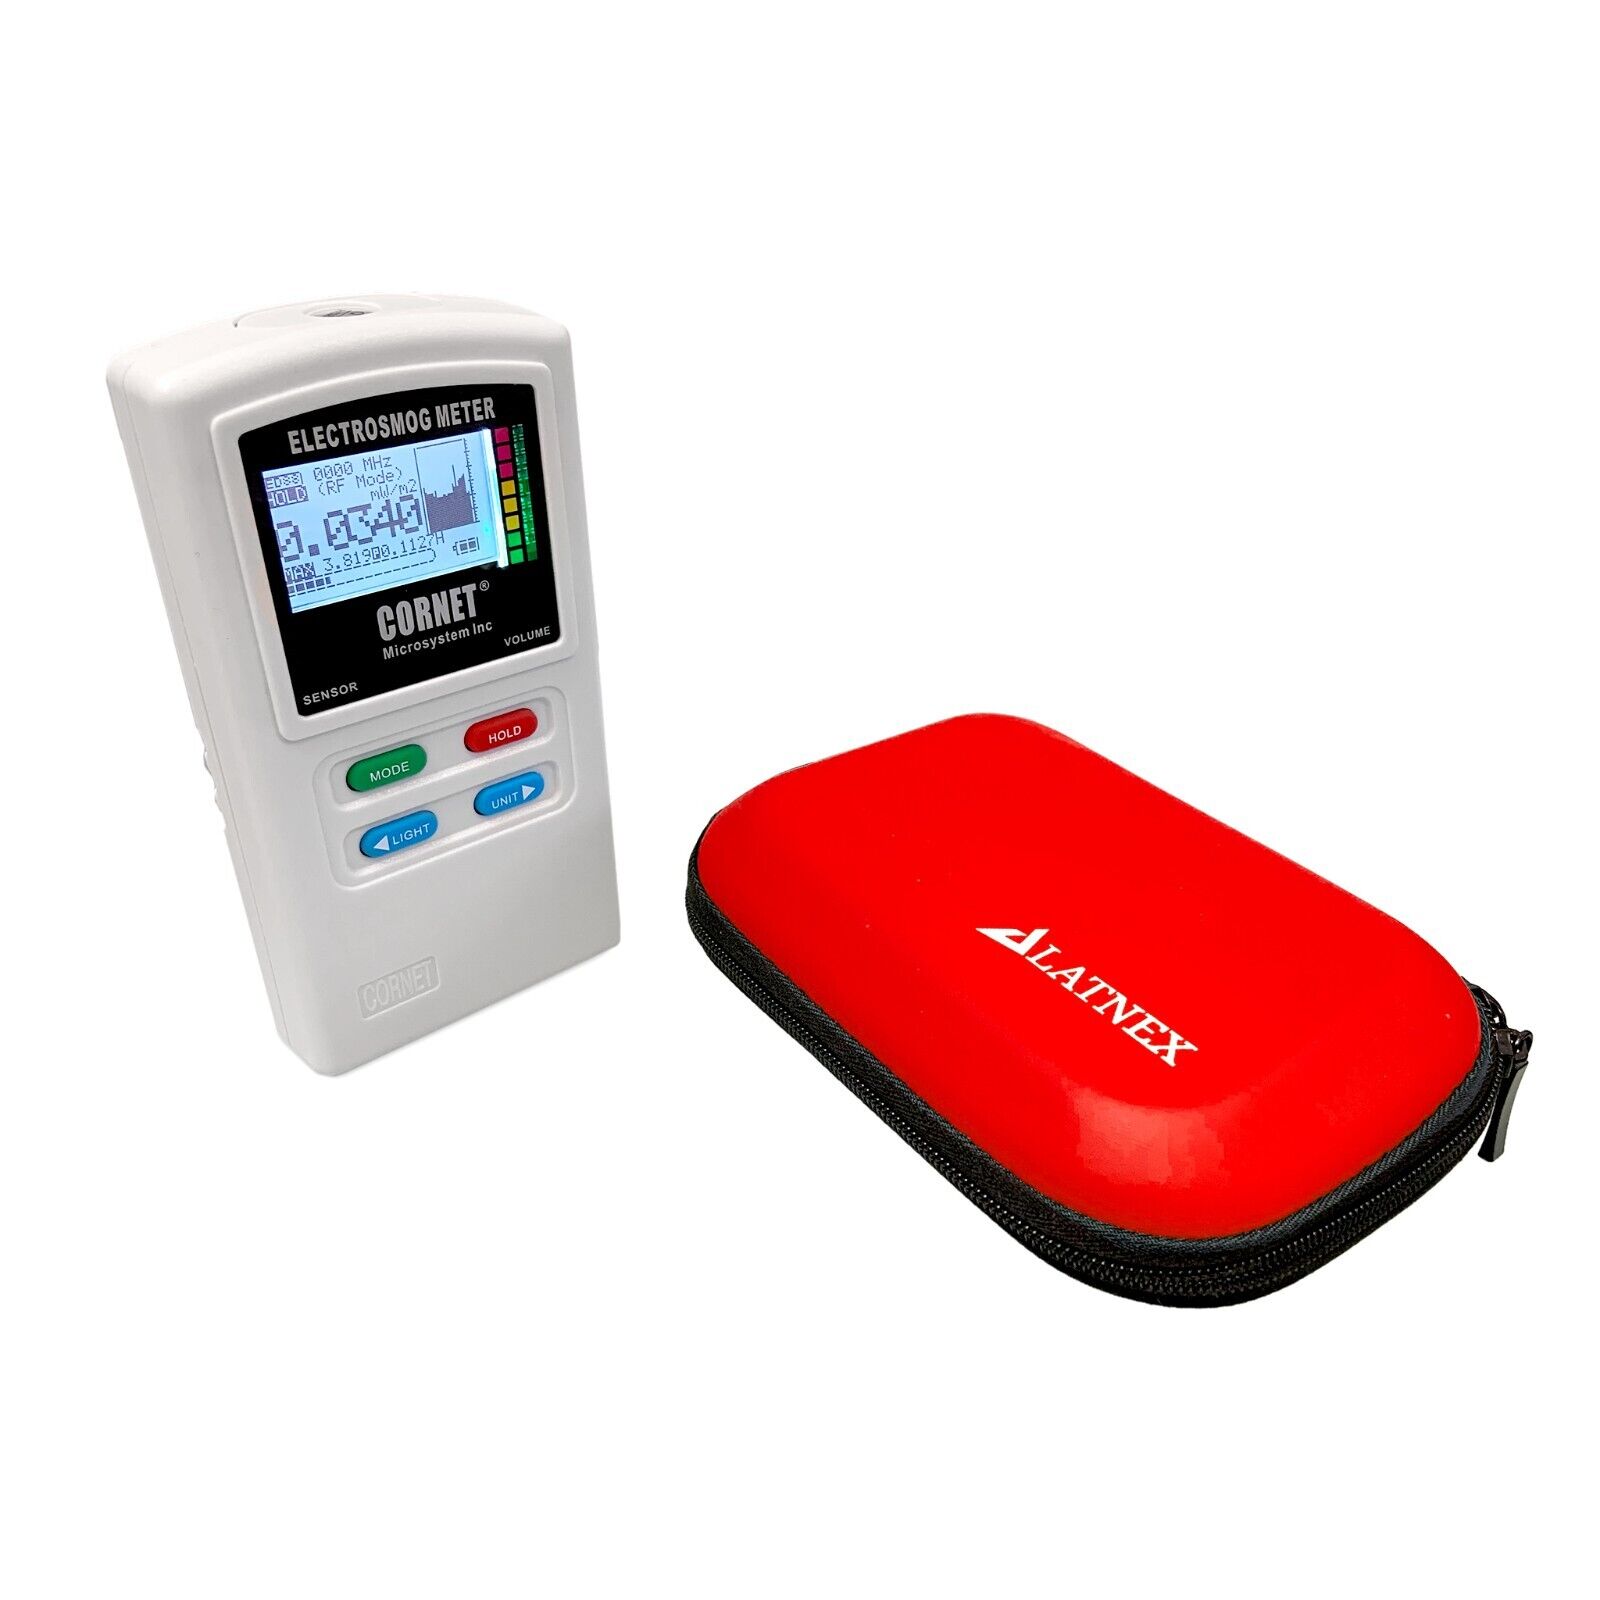 CORNET® ED88T Plus2 EMF Meter (New Release)  With Red EVA Case